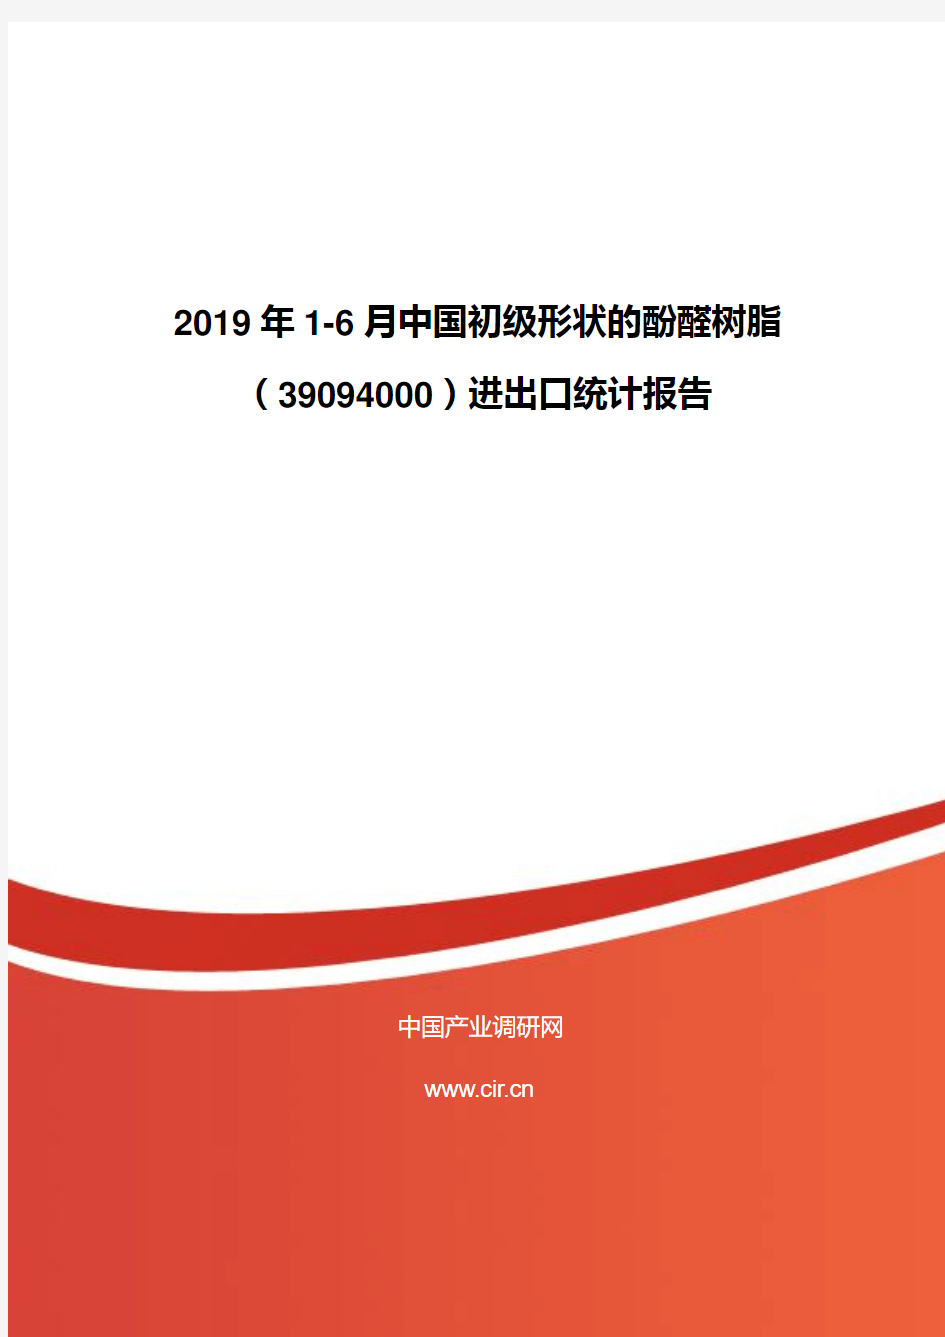 2019年1-6月中国初级形状的酚醛树脂(39094000)进出口统计报告